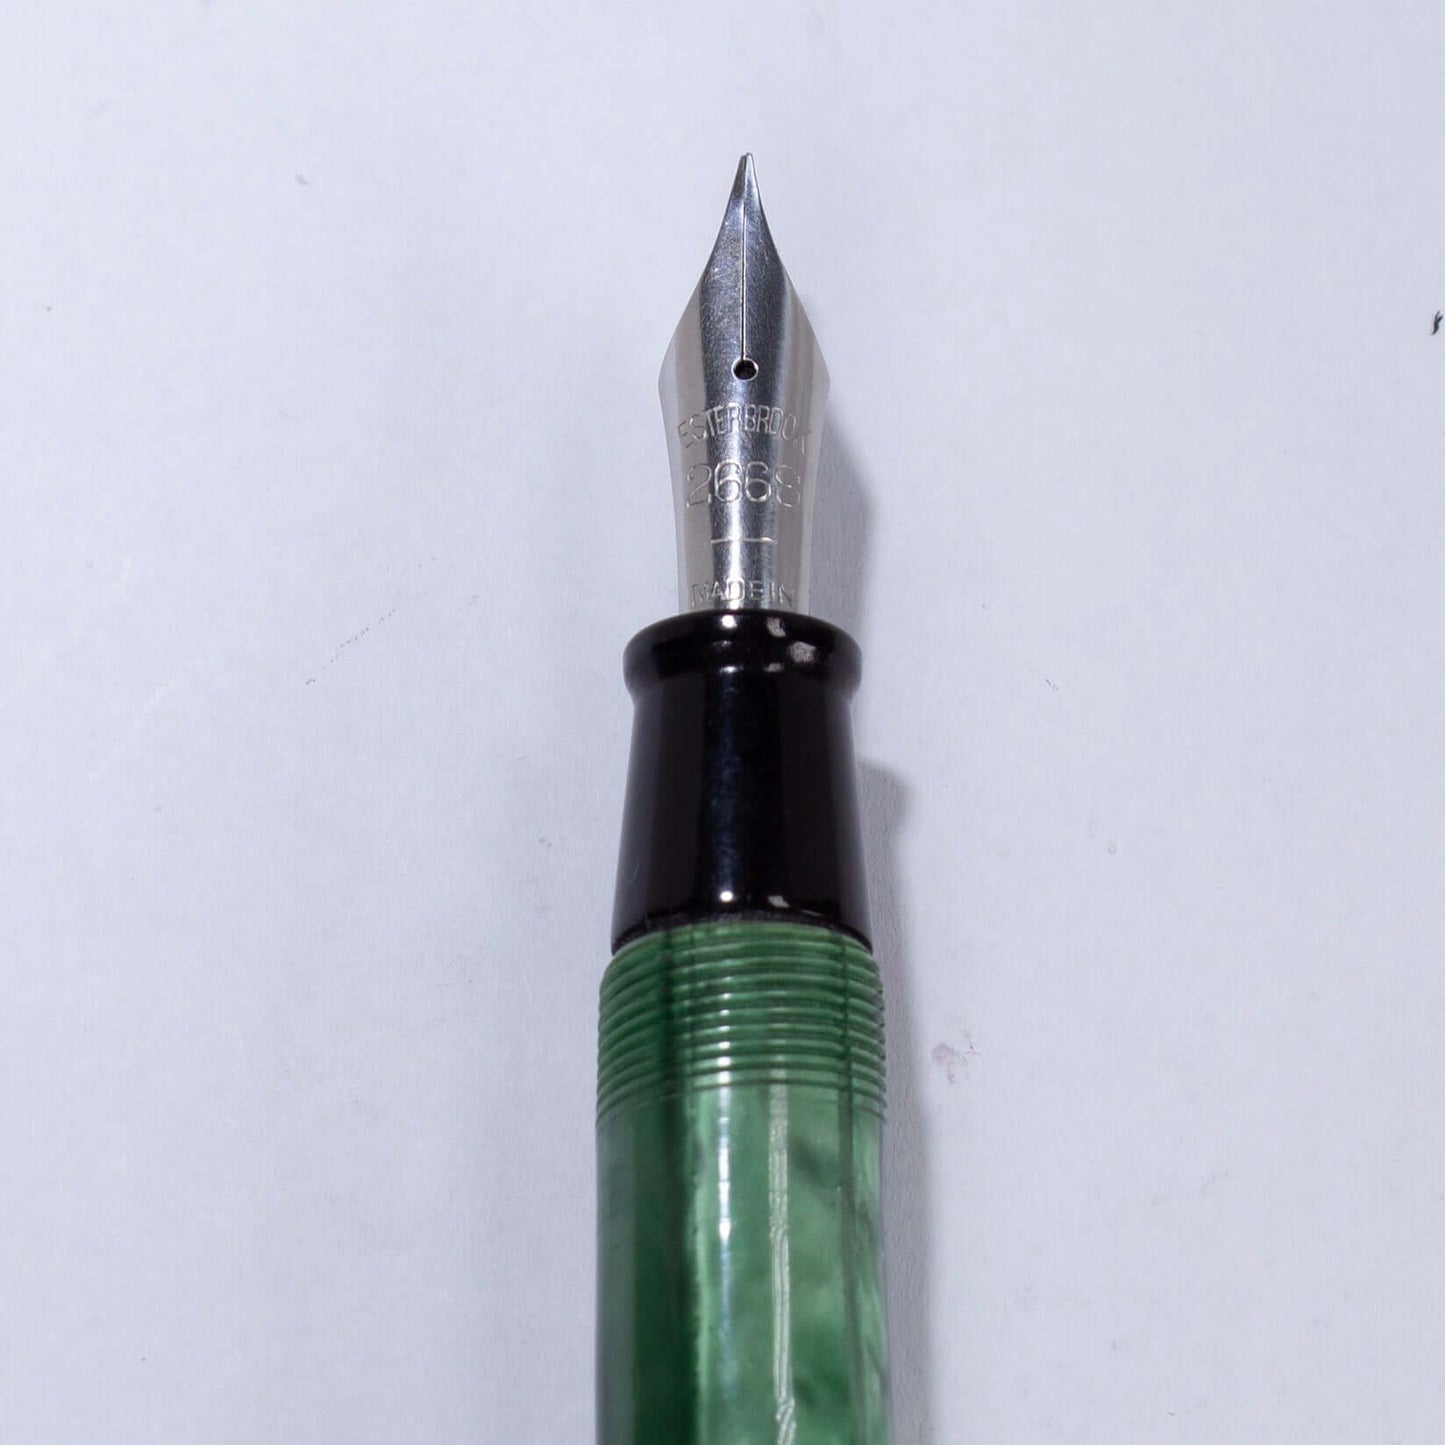 Esterbrook Dollar Pen, Foliage Green, Restored. #2668 Med. Nib